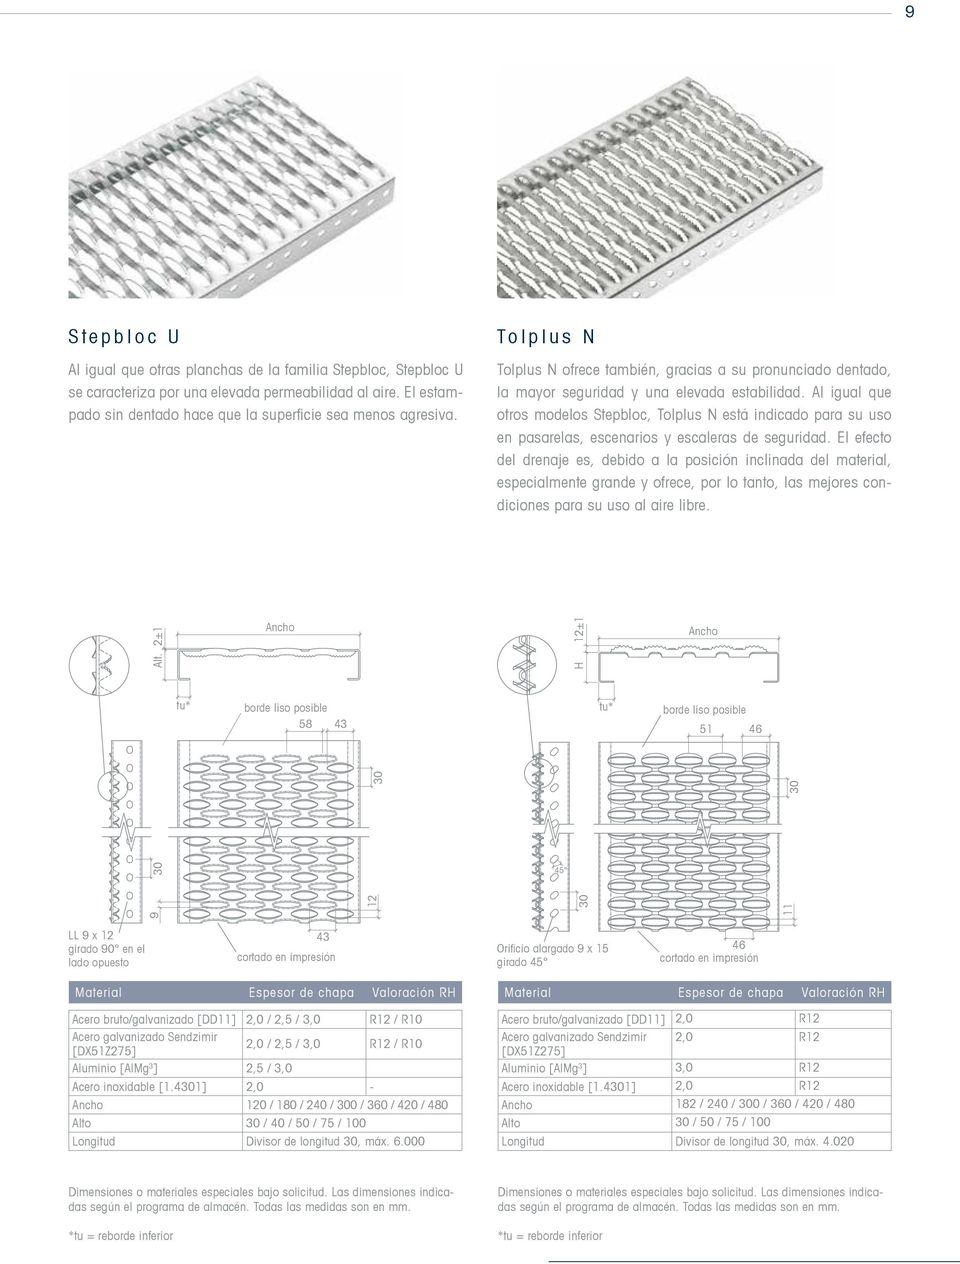 Al igual que otros modelos Stepbloc, Tolplus N está indicado para su uso en pasarelas, escenarios y escaleras de seguridad.